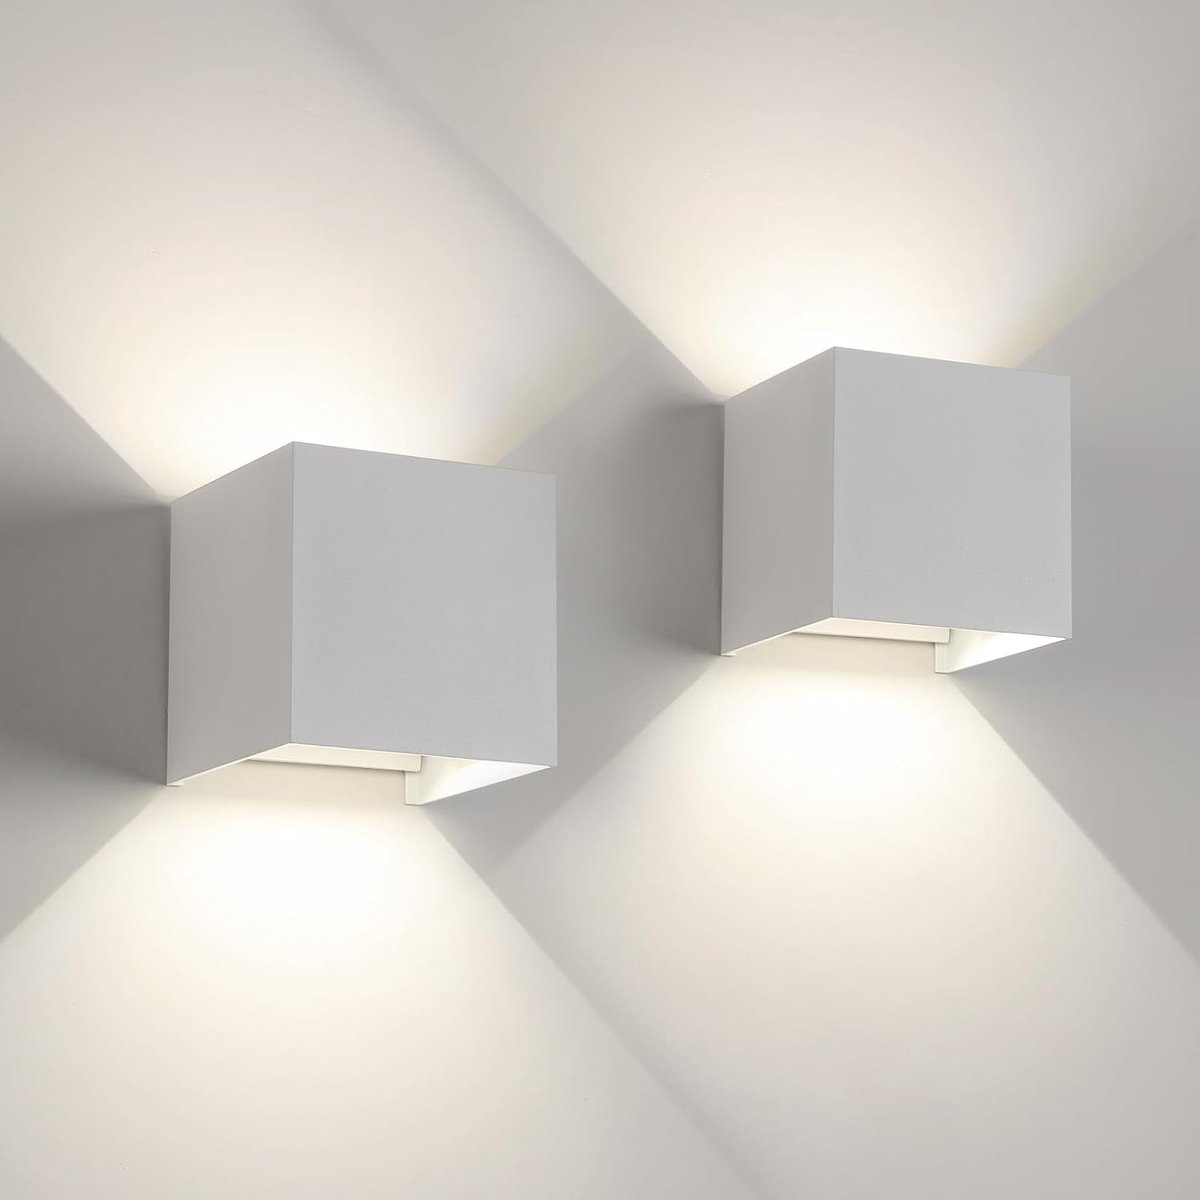 Goeco Wandlamp 2 stuks - Geschikt voor binnen en buiten - Buitenlamp - Industrieel - Wandlampen - Wit - 4000K - neutraal licht